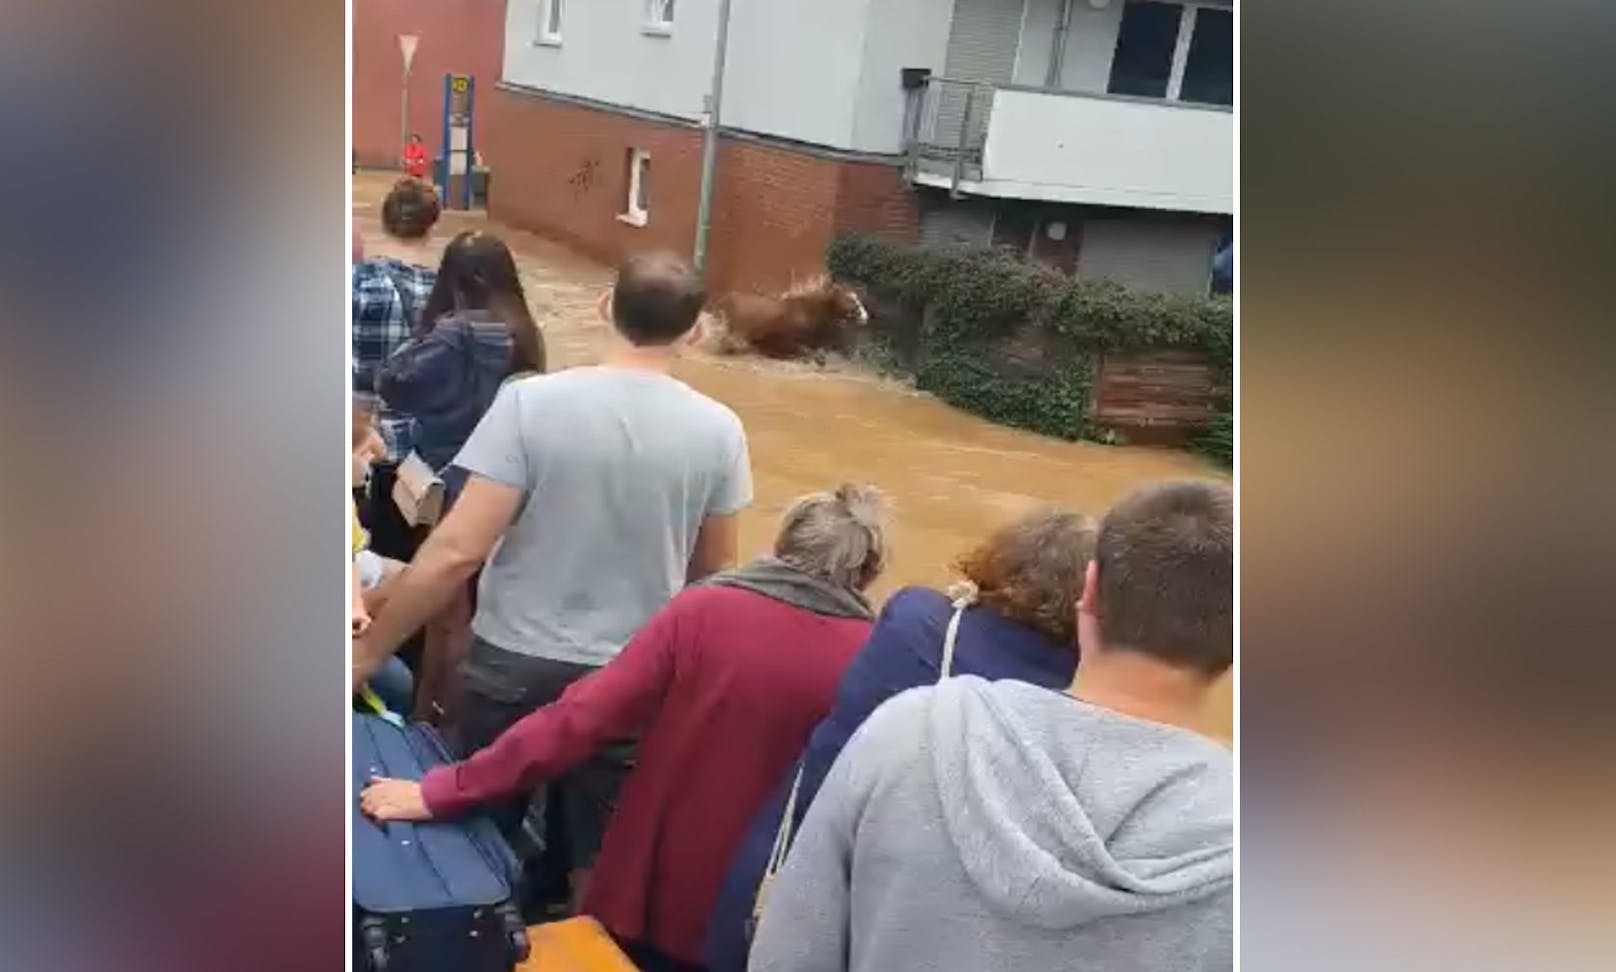 In der Ortschaft Unter-Liblar (Liblar ist ein Stadtteil von Erftstadt im Rhein-Erft-Kreis) werden gerade Menschen evakuiert, als zwei völlig verschreckte Pferde durch das Wasser galoppieren. 